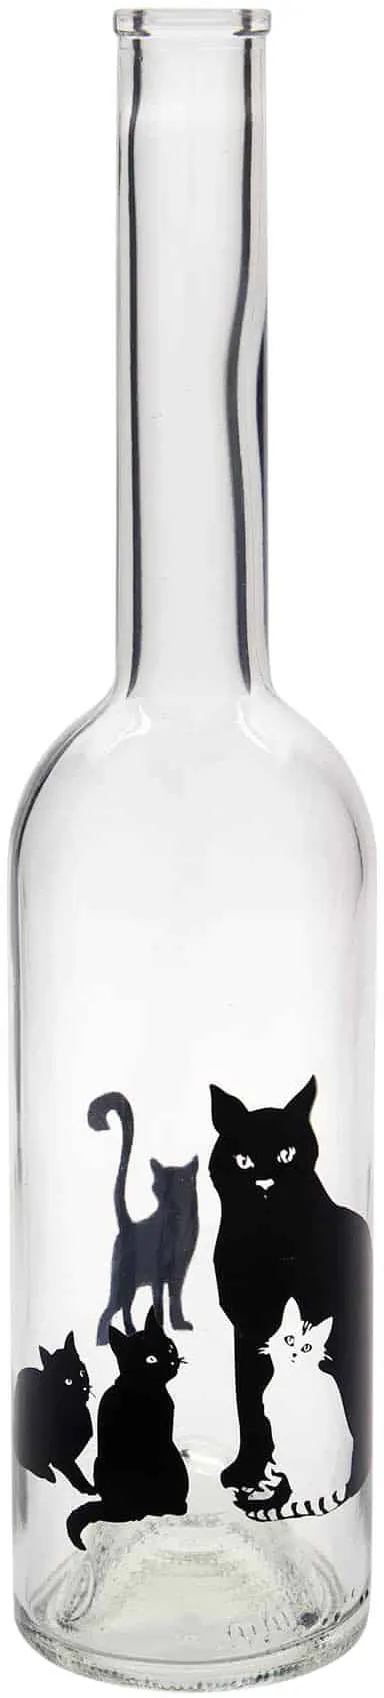 500 ml Bottiglia di vetro 'Opera', motivo: Gatti, imboccatura: fascetta